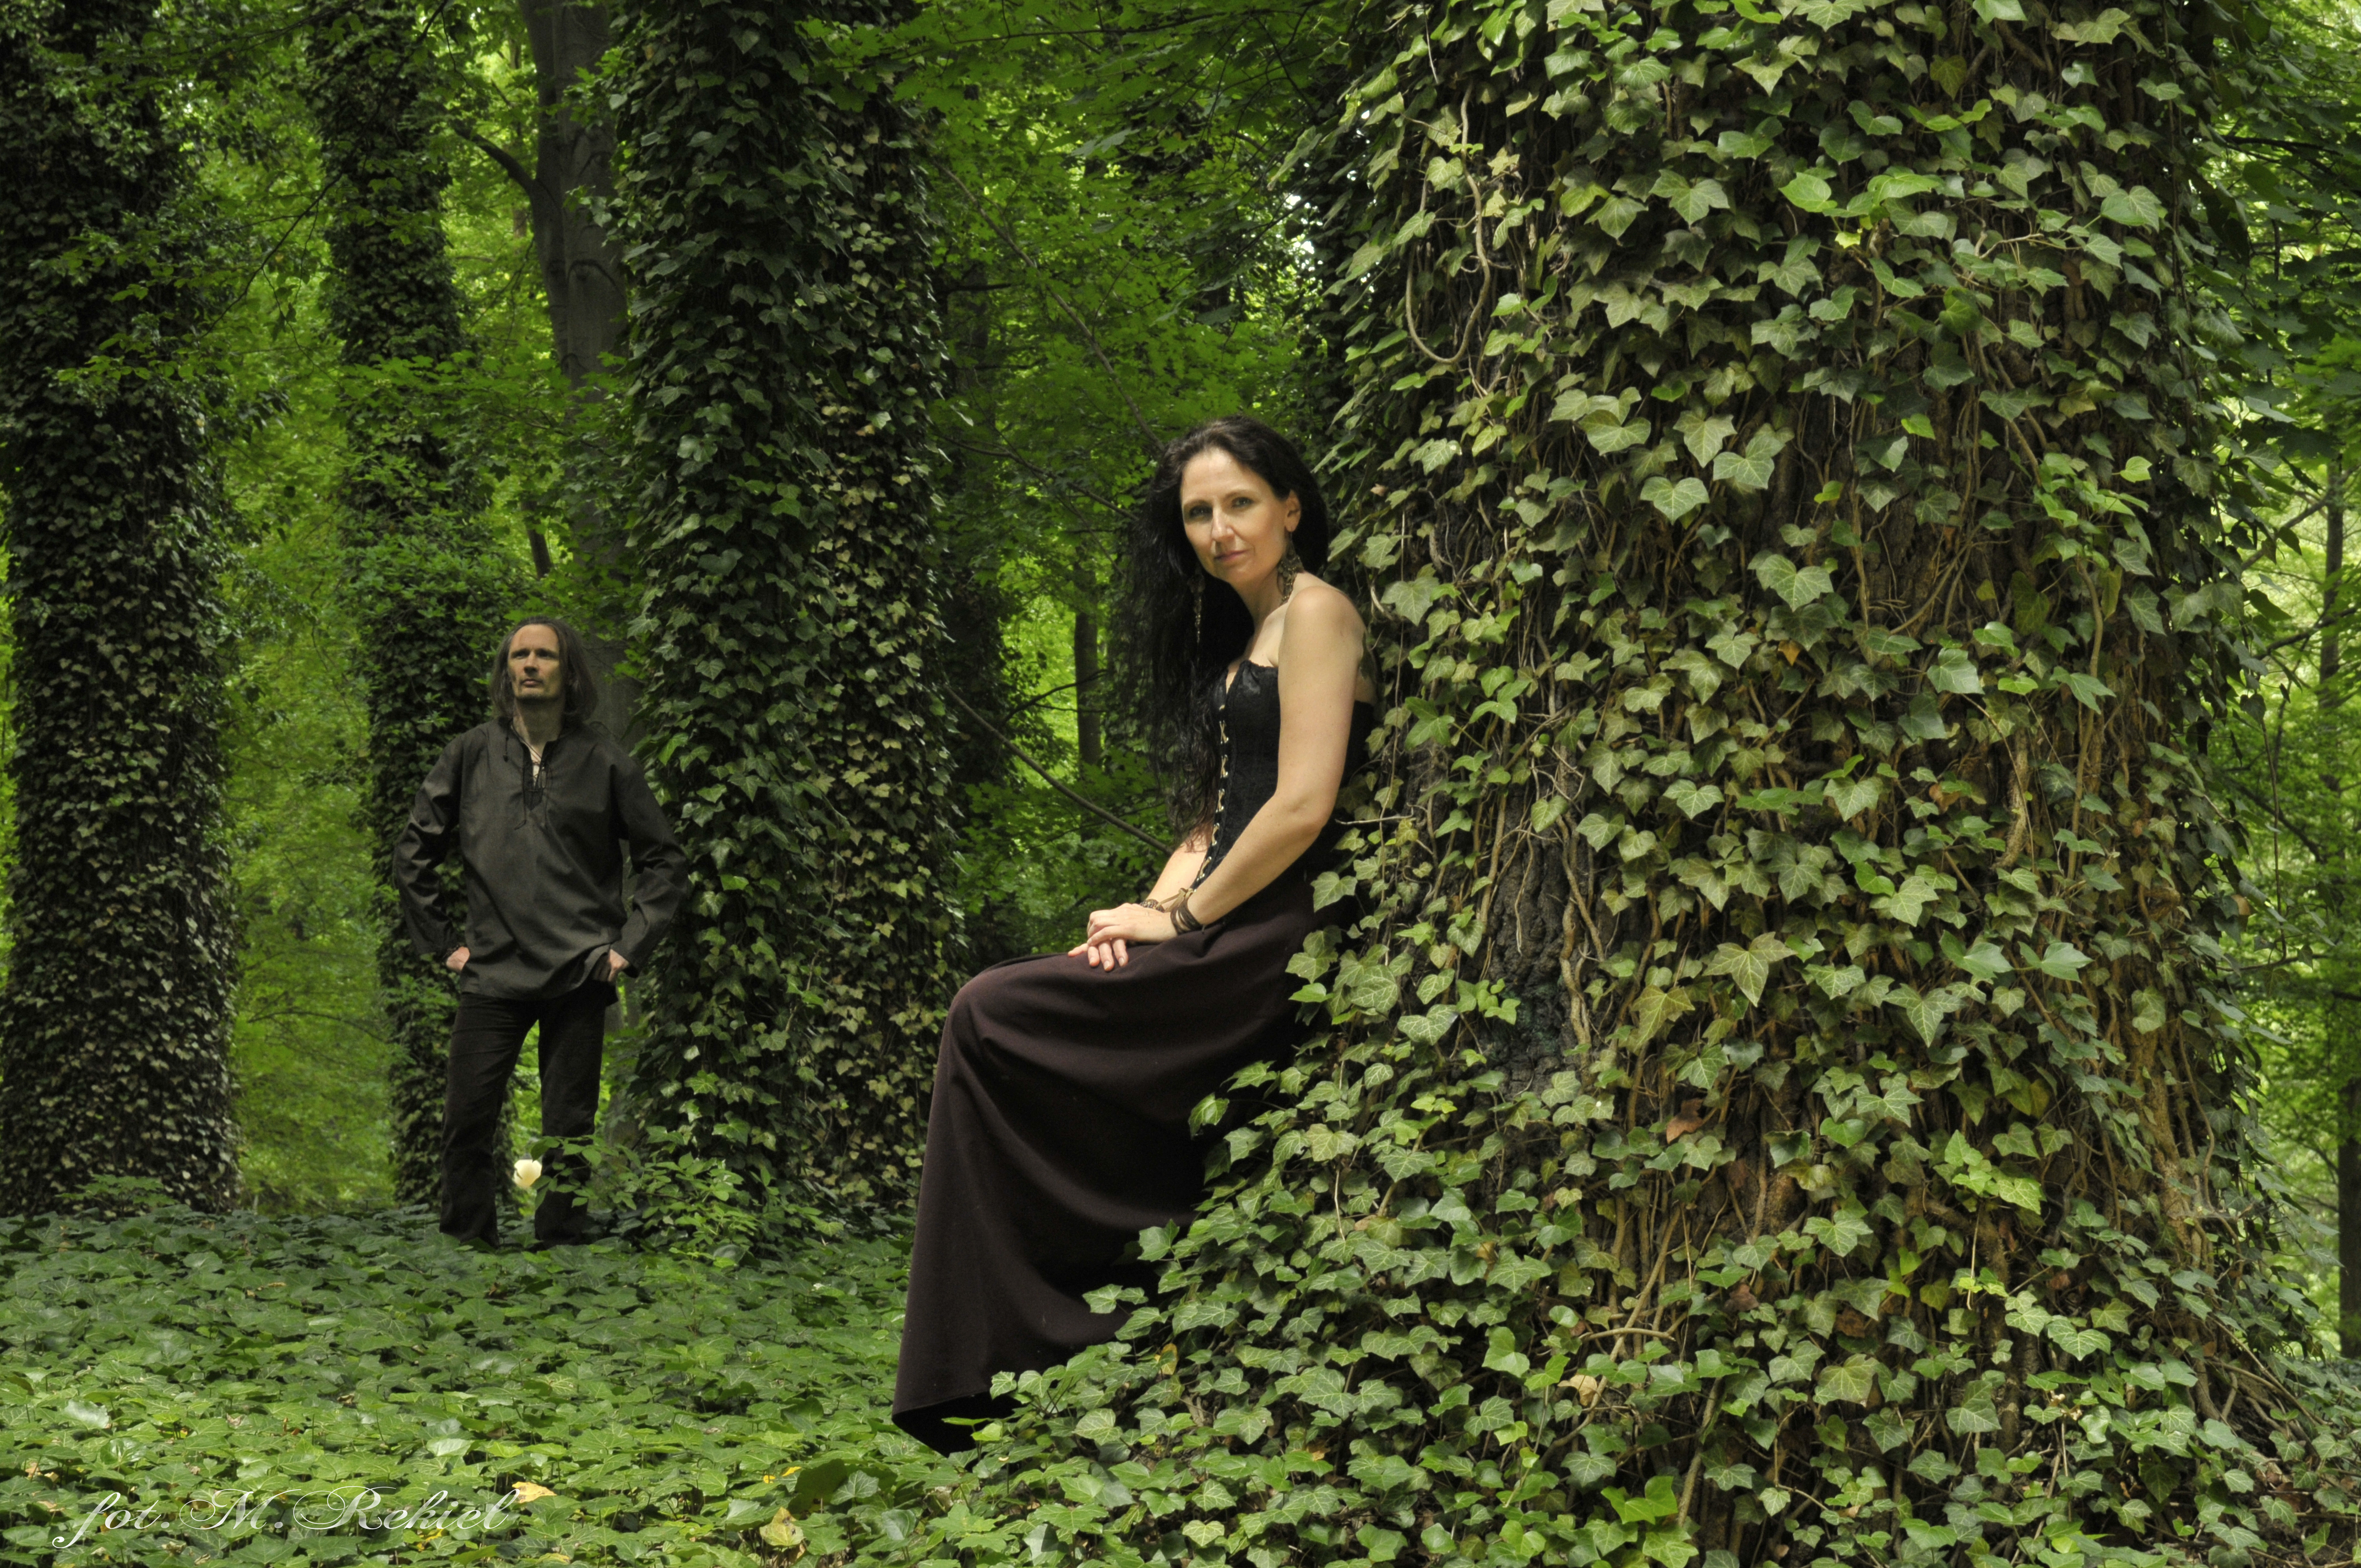 Kobieta (Anna Winiarska) ubrana na czarno opiera się  o drzewo. W oddali stoi mężczyzna ubrany na czarno. Drzewa porośnięte są bluszczem